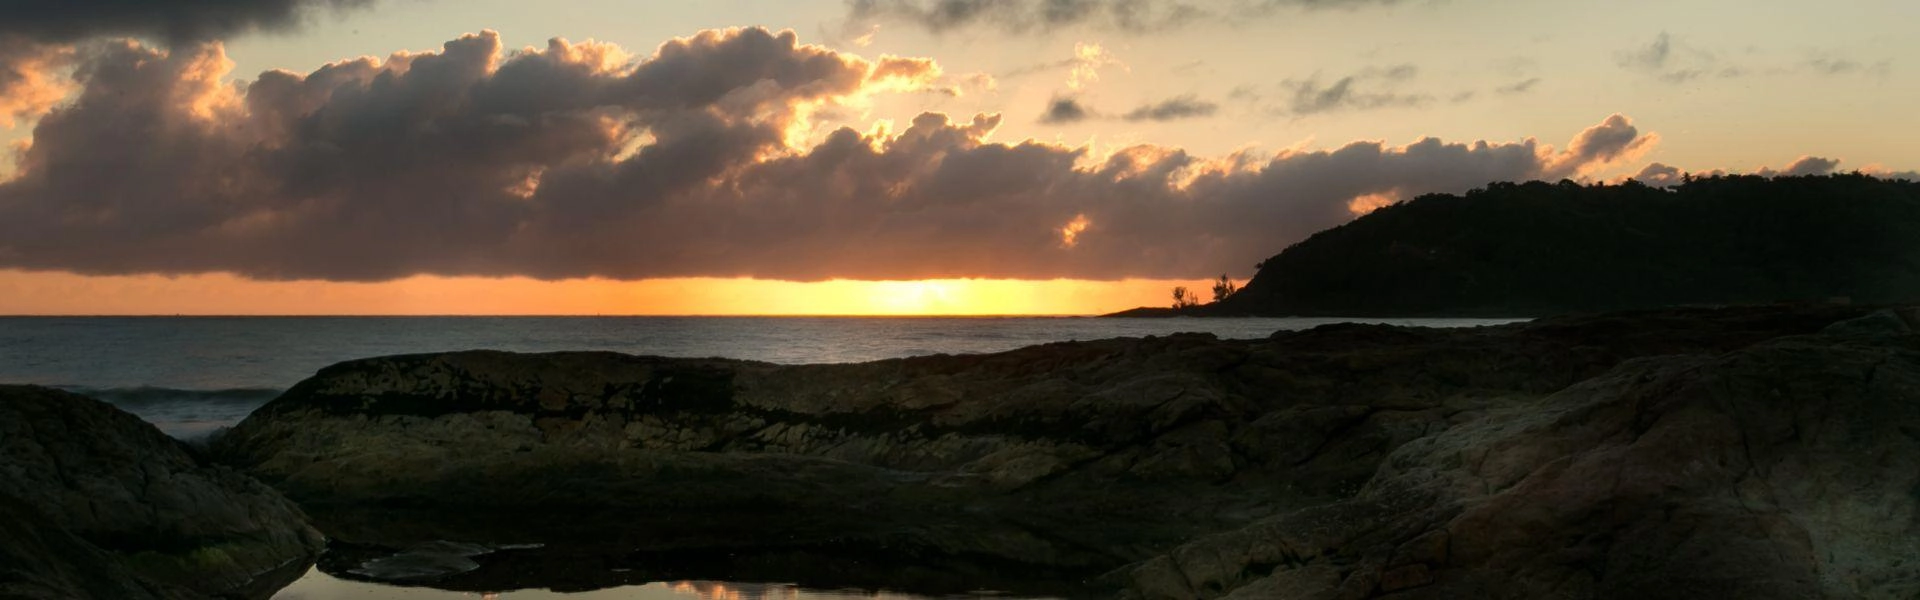 Pôr-do-sol em Praia Grande, Penha/SC.